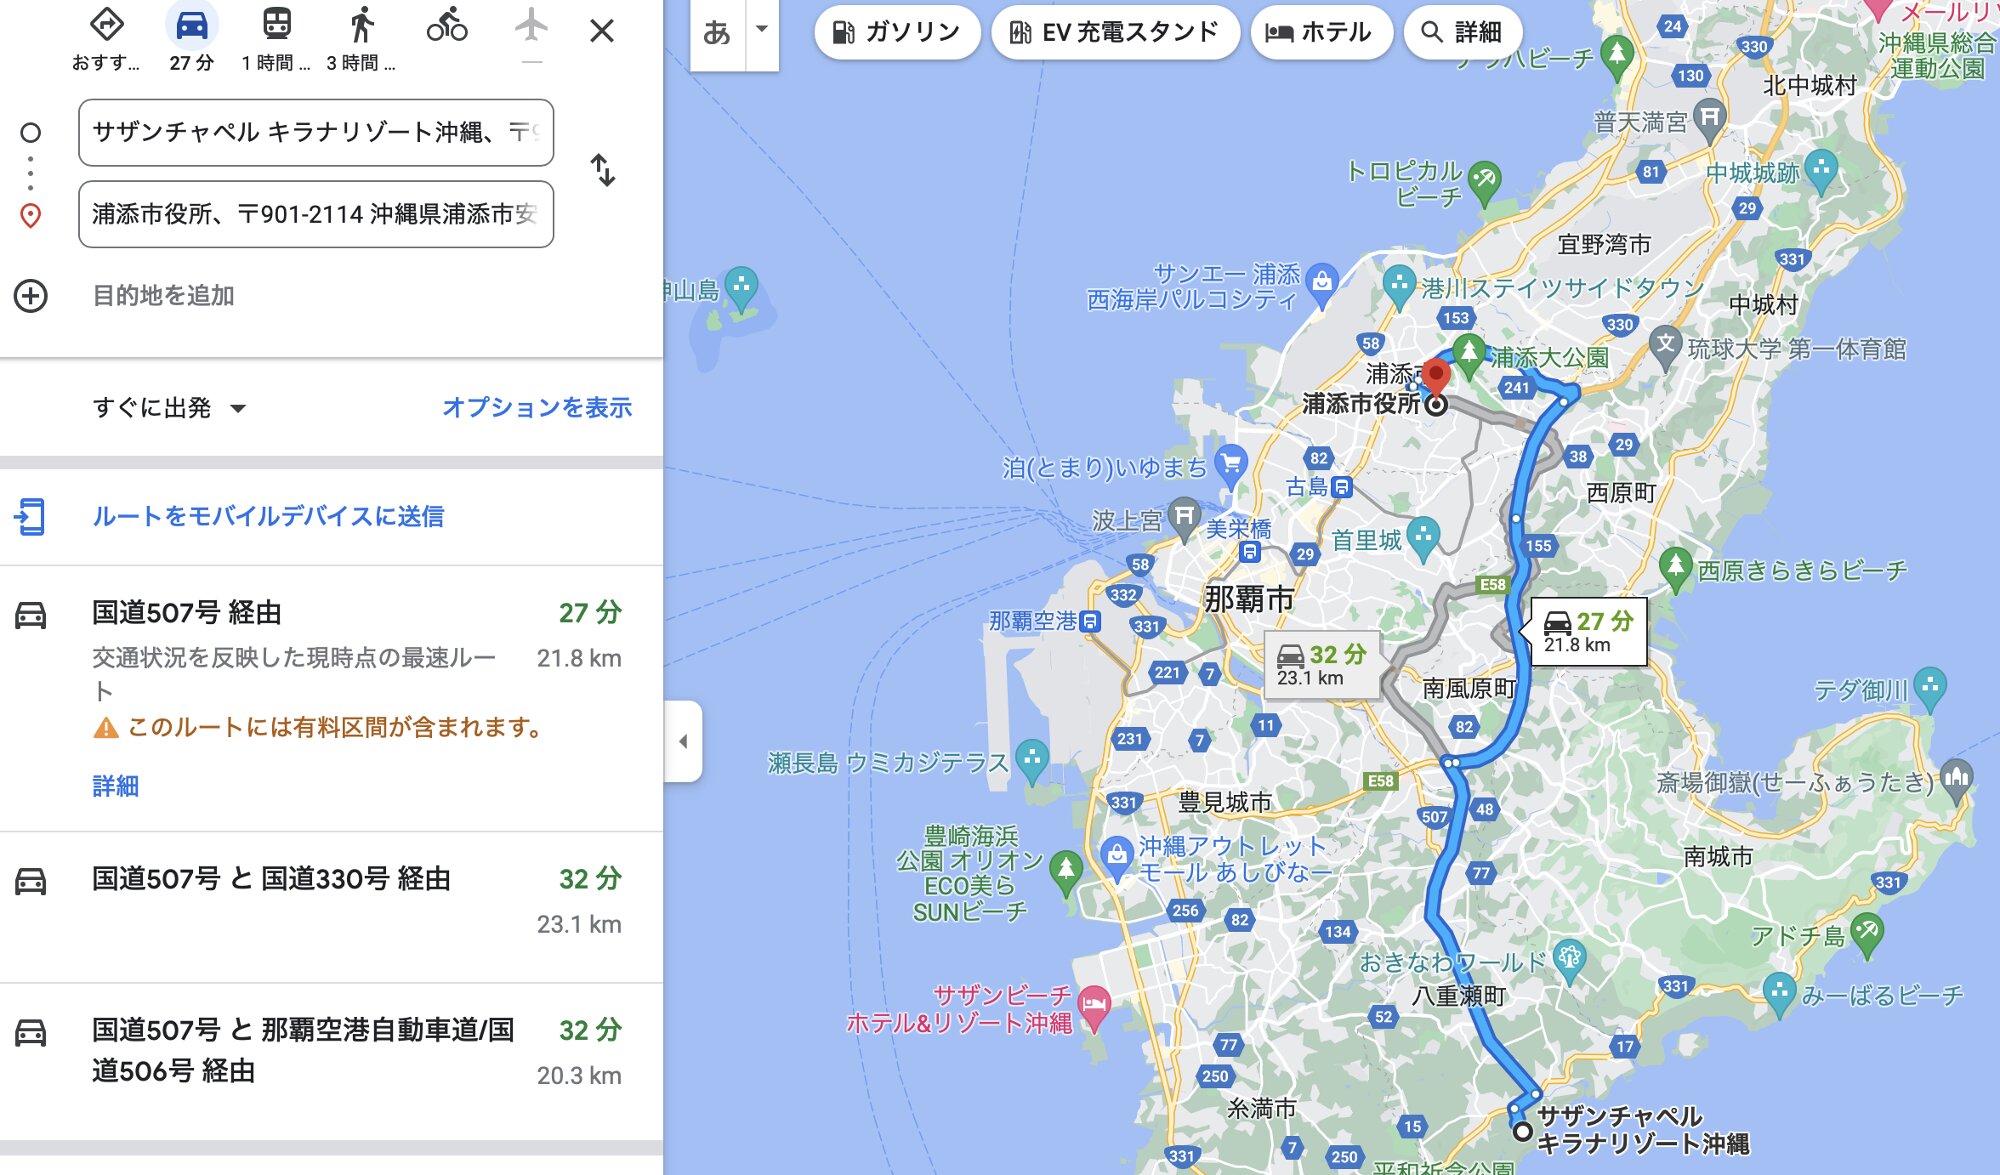 浦添市役所⇔現地までの検索結果。Googleマップより引用